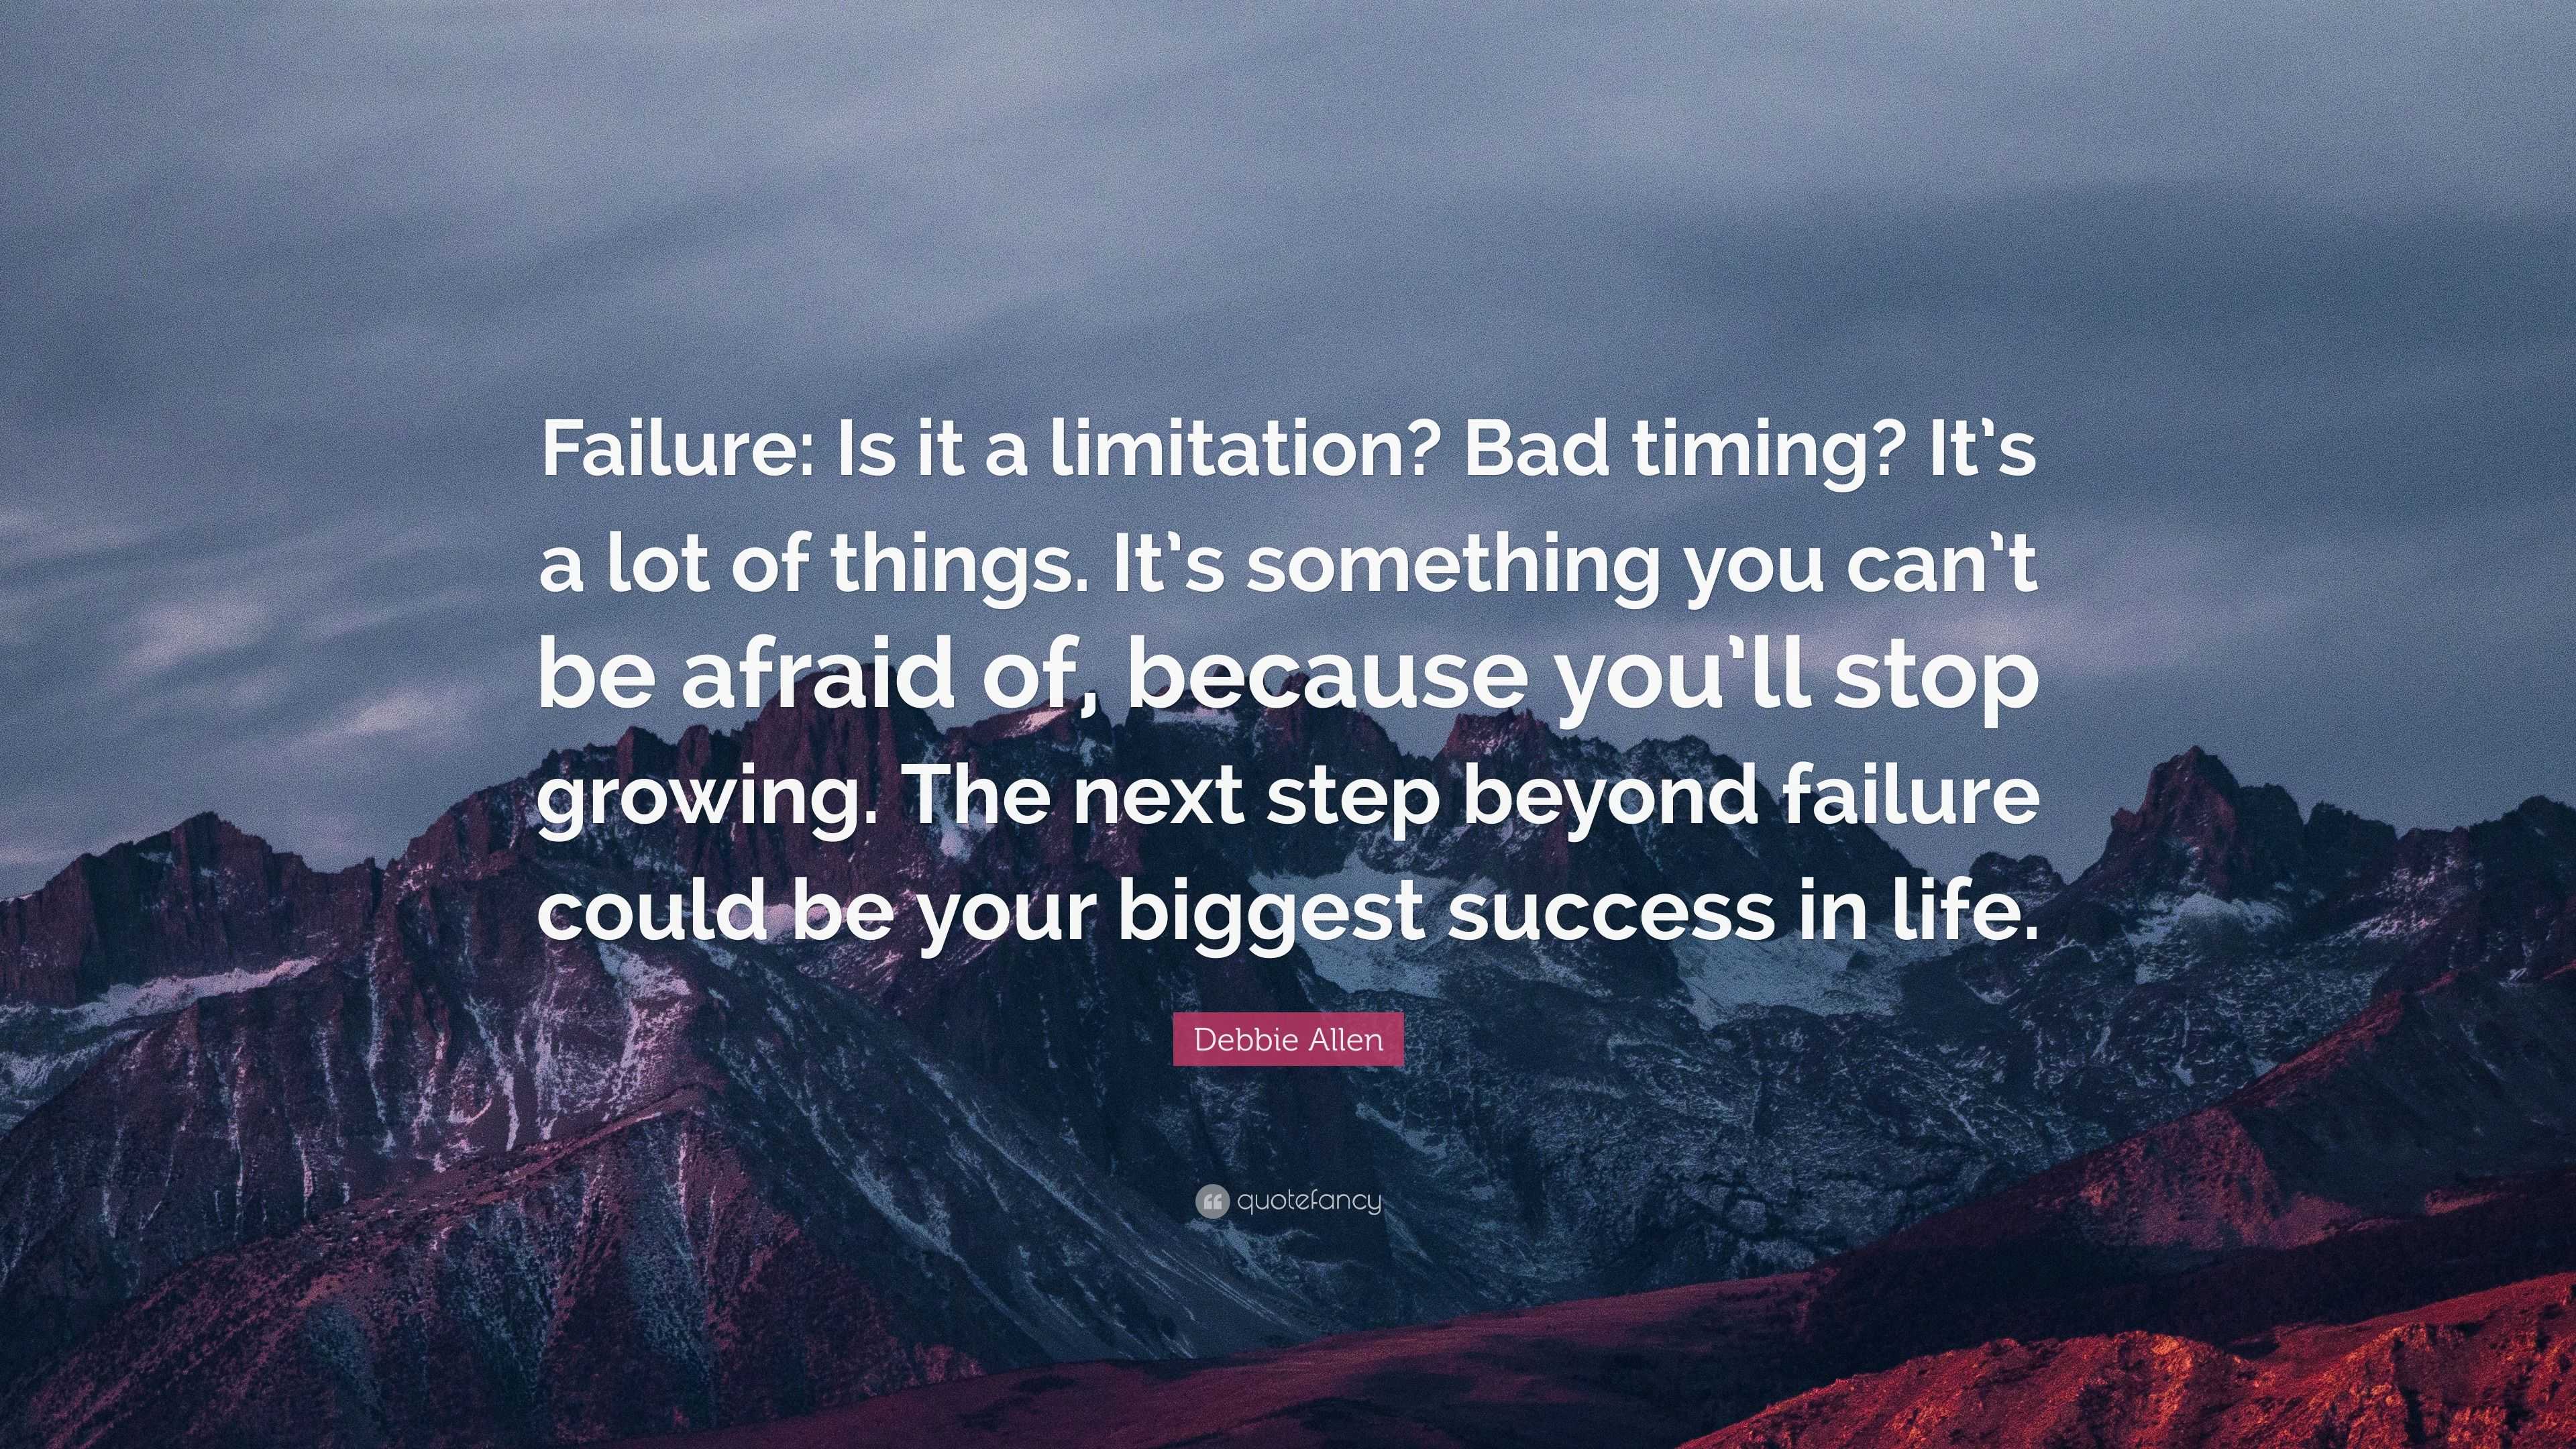 Debbie Allen Quote “Failure Is it a limitation Bad timing It s